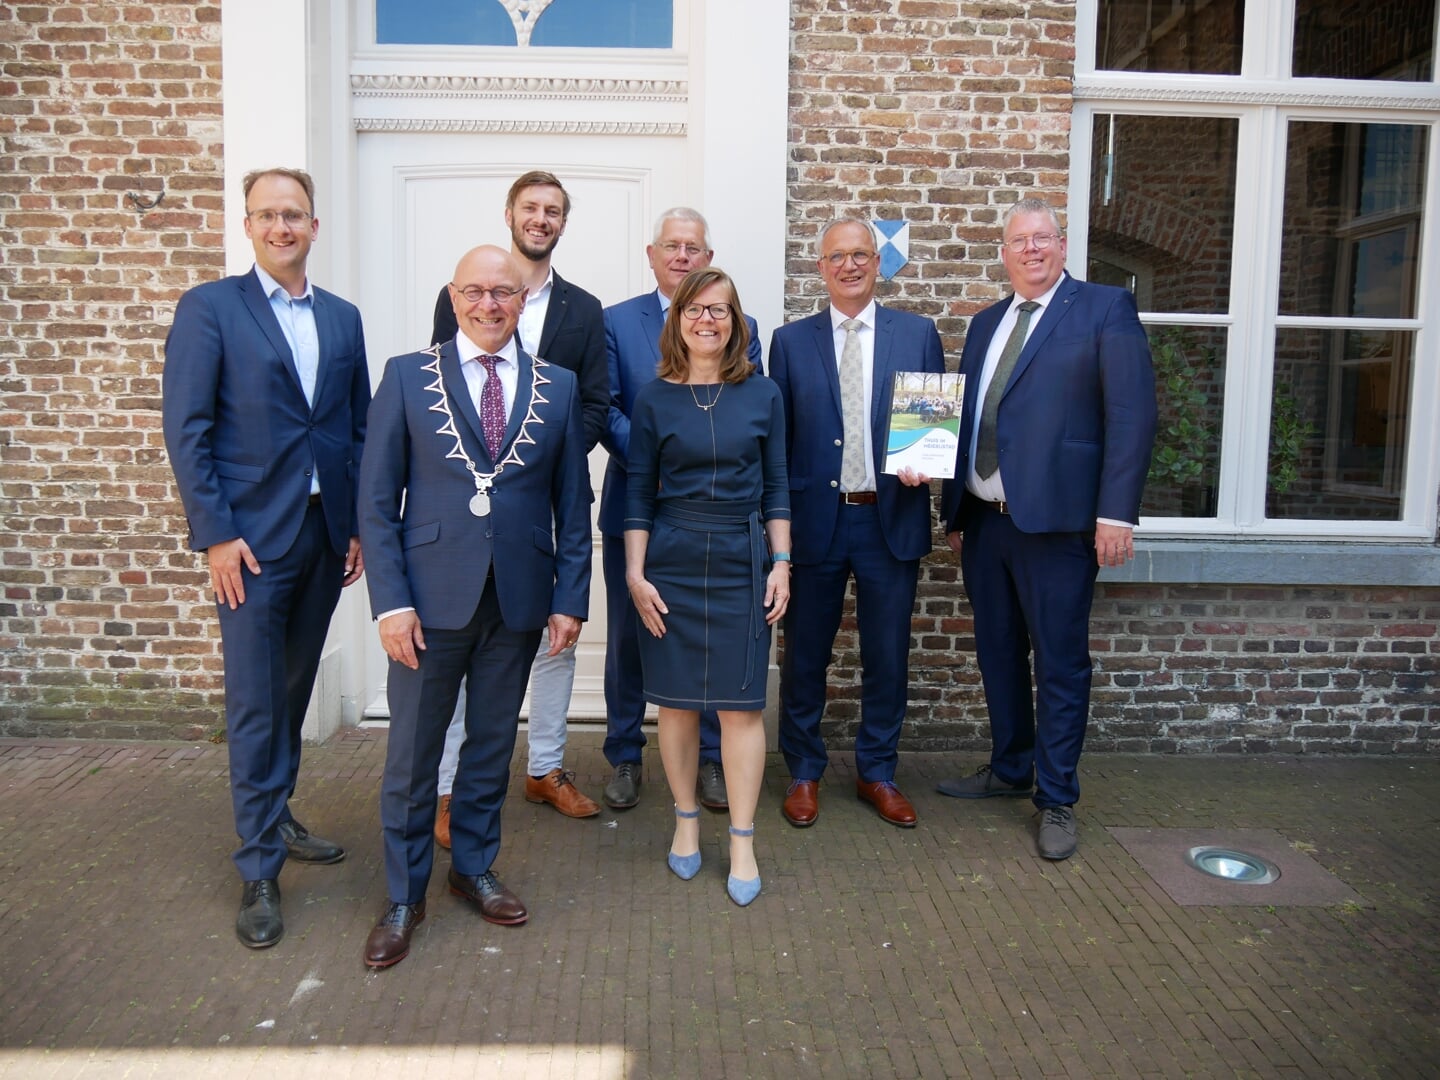 Menno Roozendaal, Kees van Rooij, Rik Compagne, Jan van Burgsteden, Marijke Wilms (gemeentesecretaris), Jan Goijaarts en Johan van Gerwen.